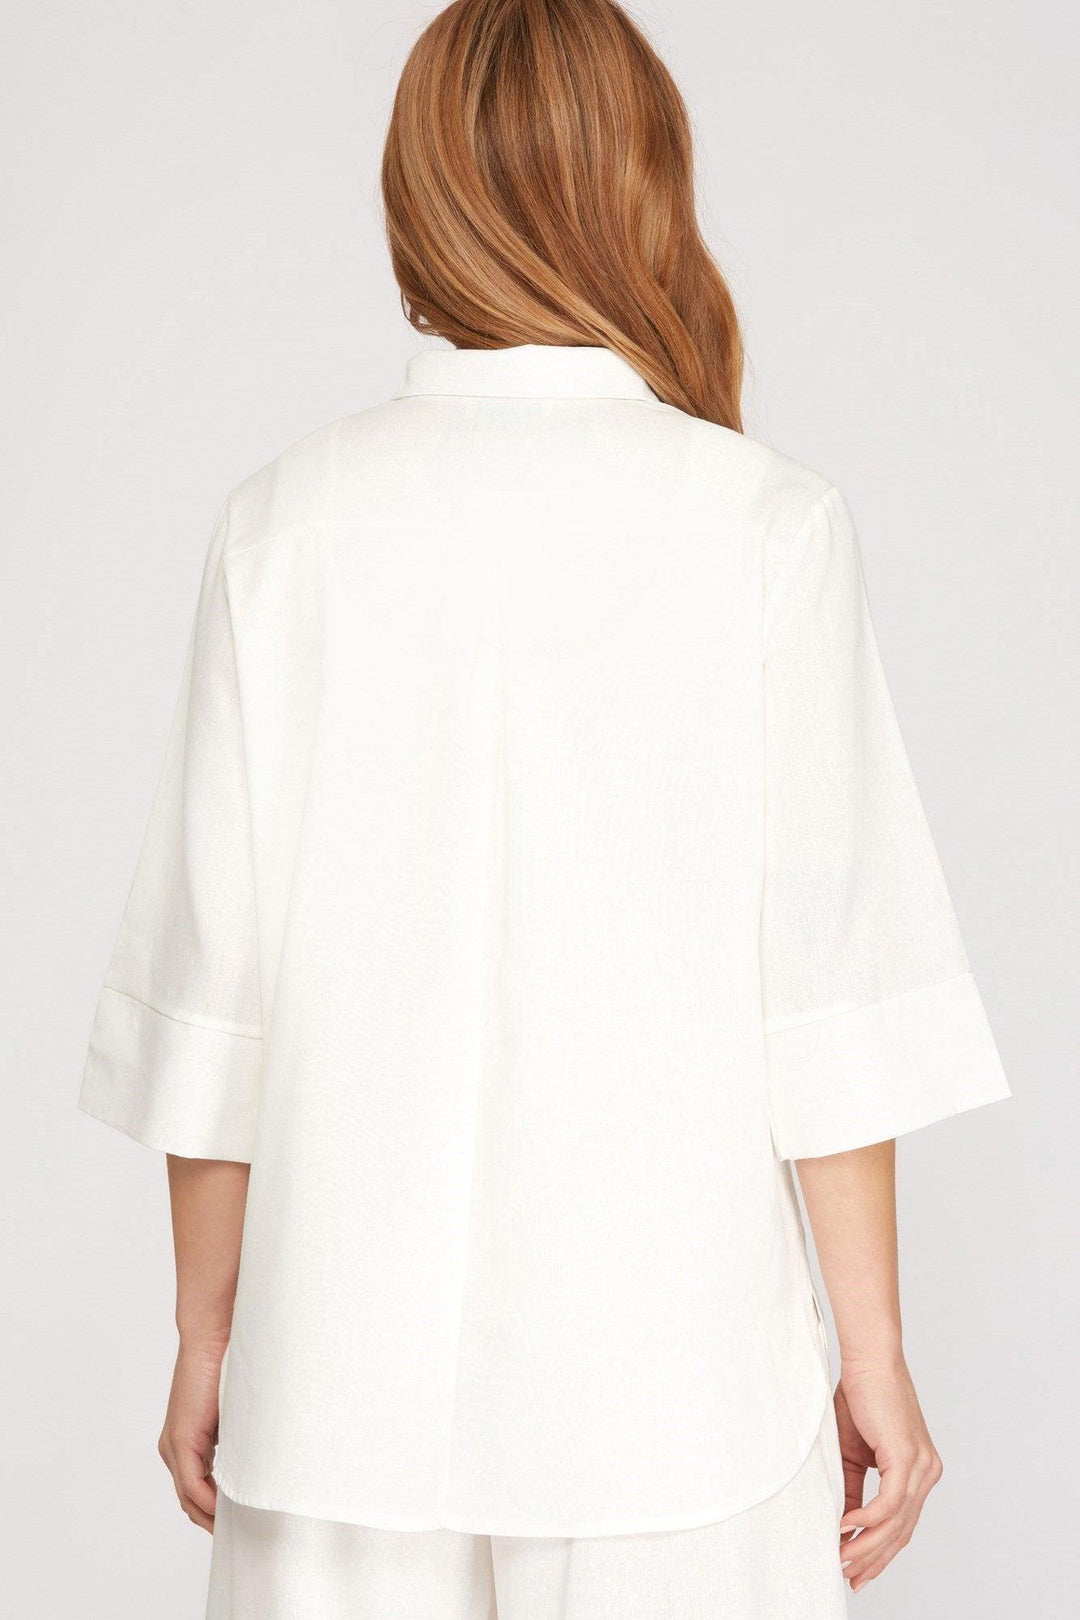 white spring summer trendy linen blouse